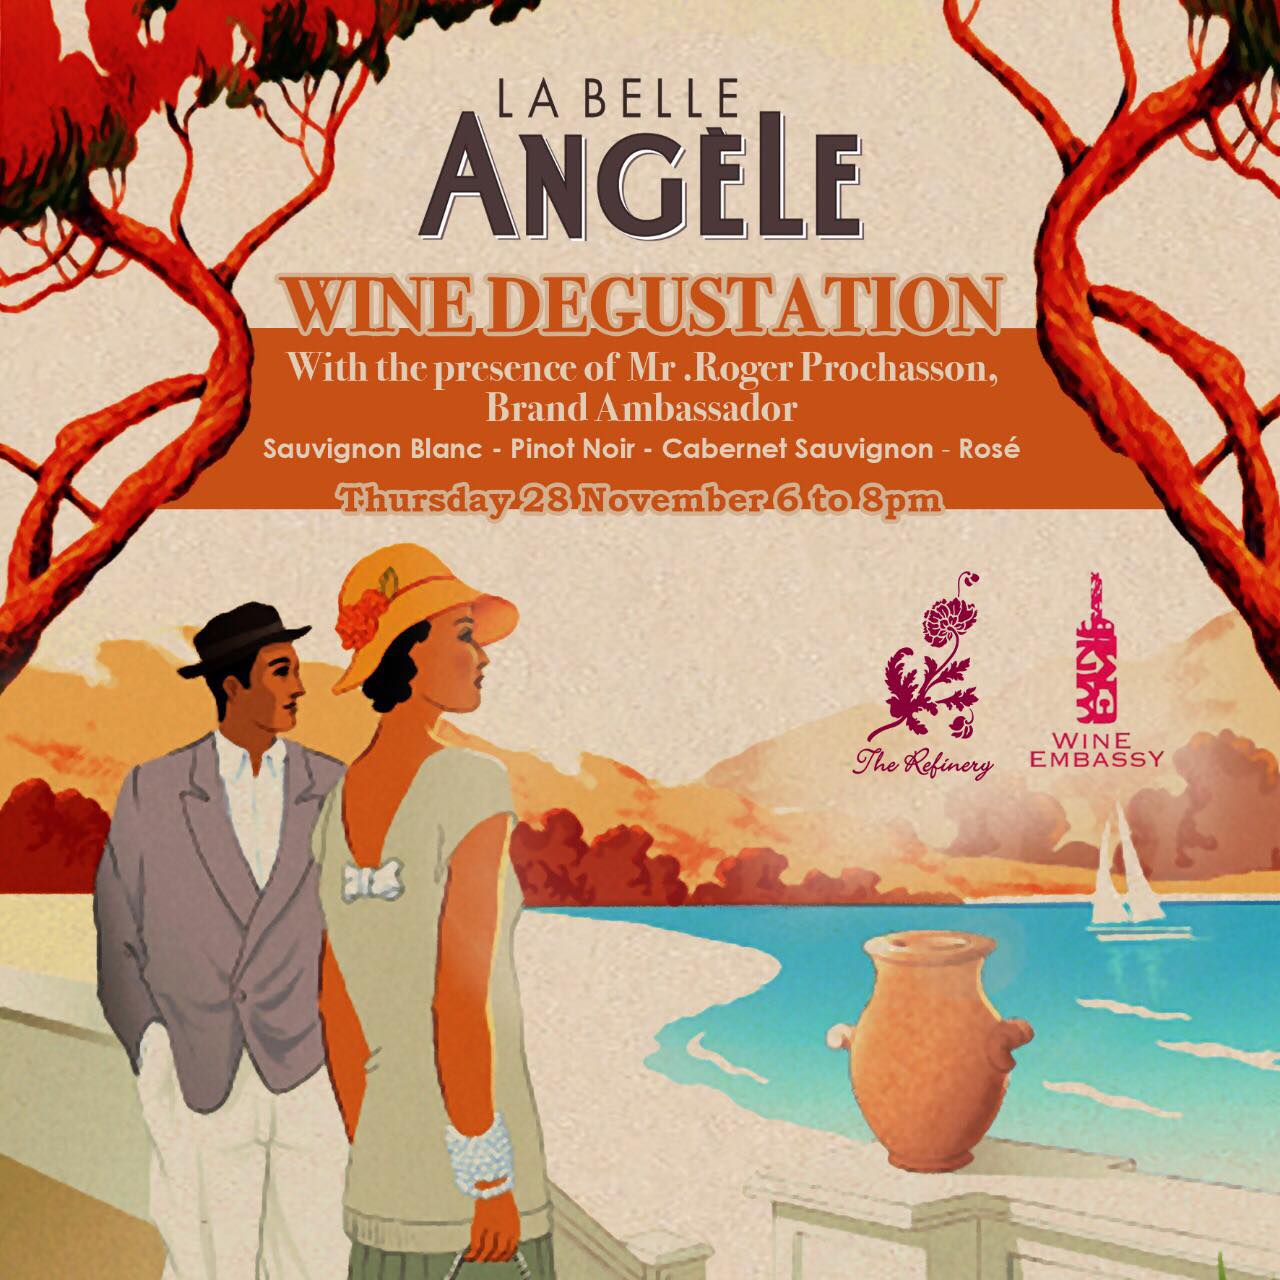 La Belle Angele Wine Degustation